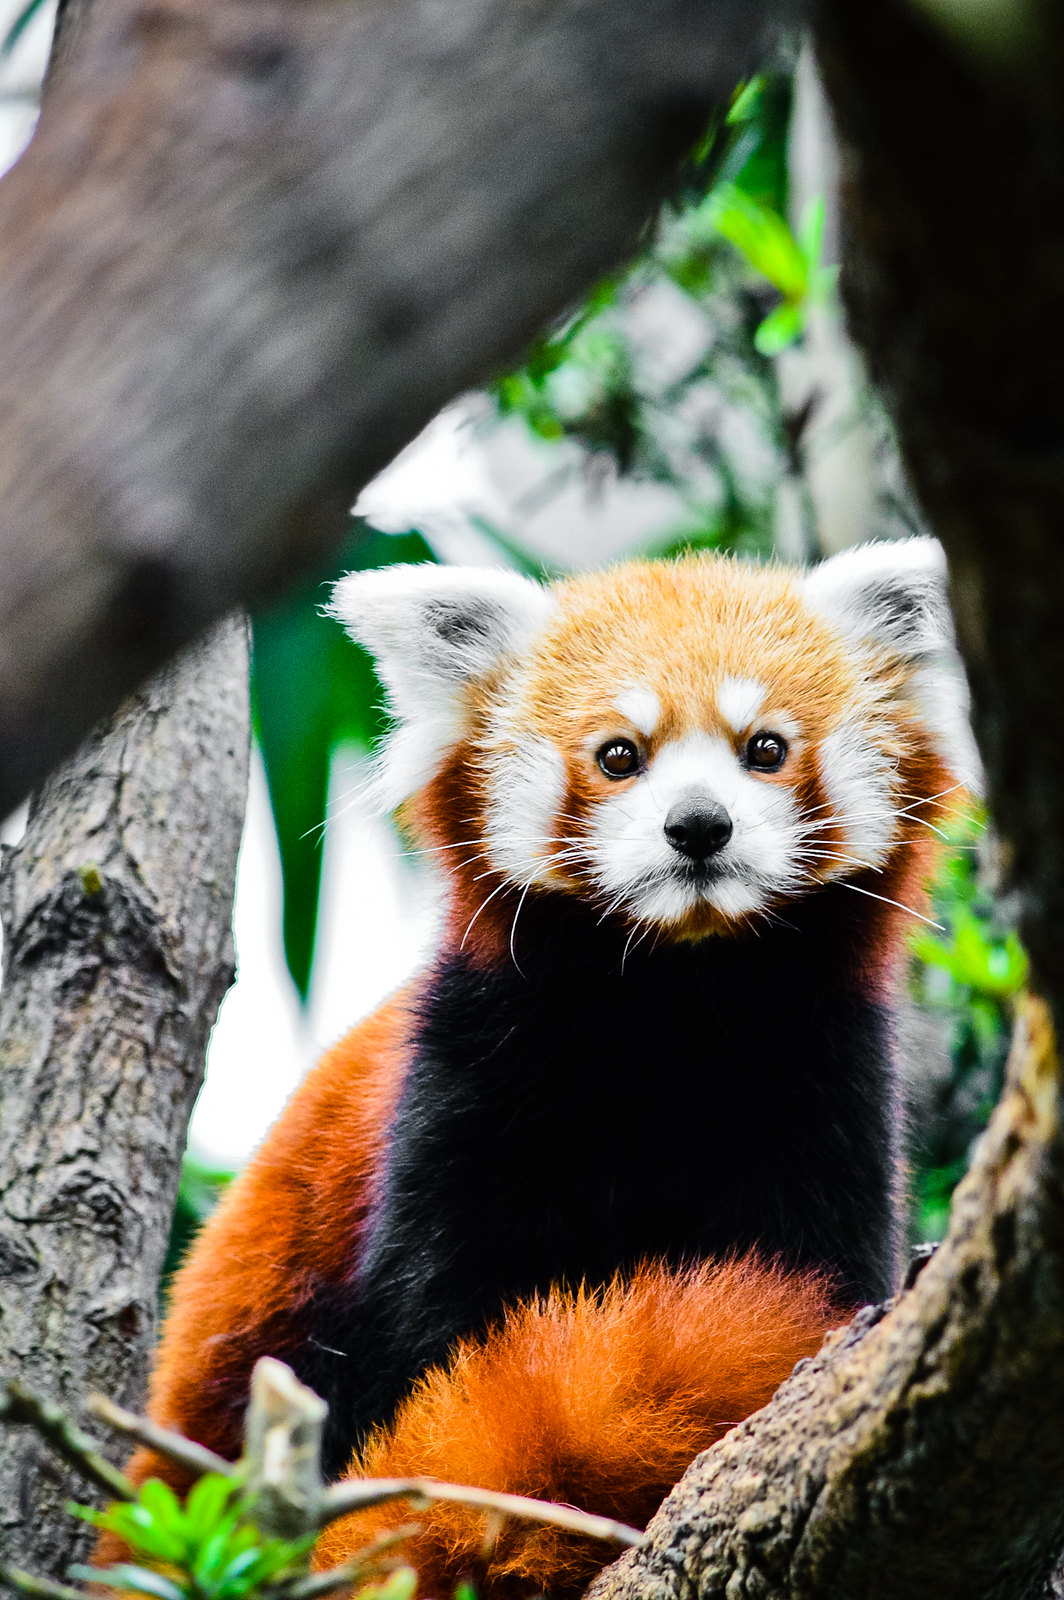 Singapore River Safari Red Panda